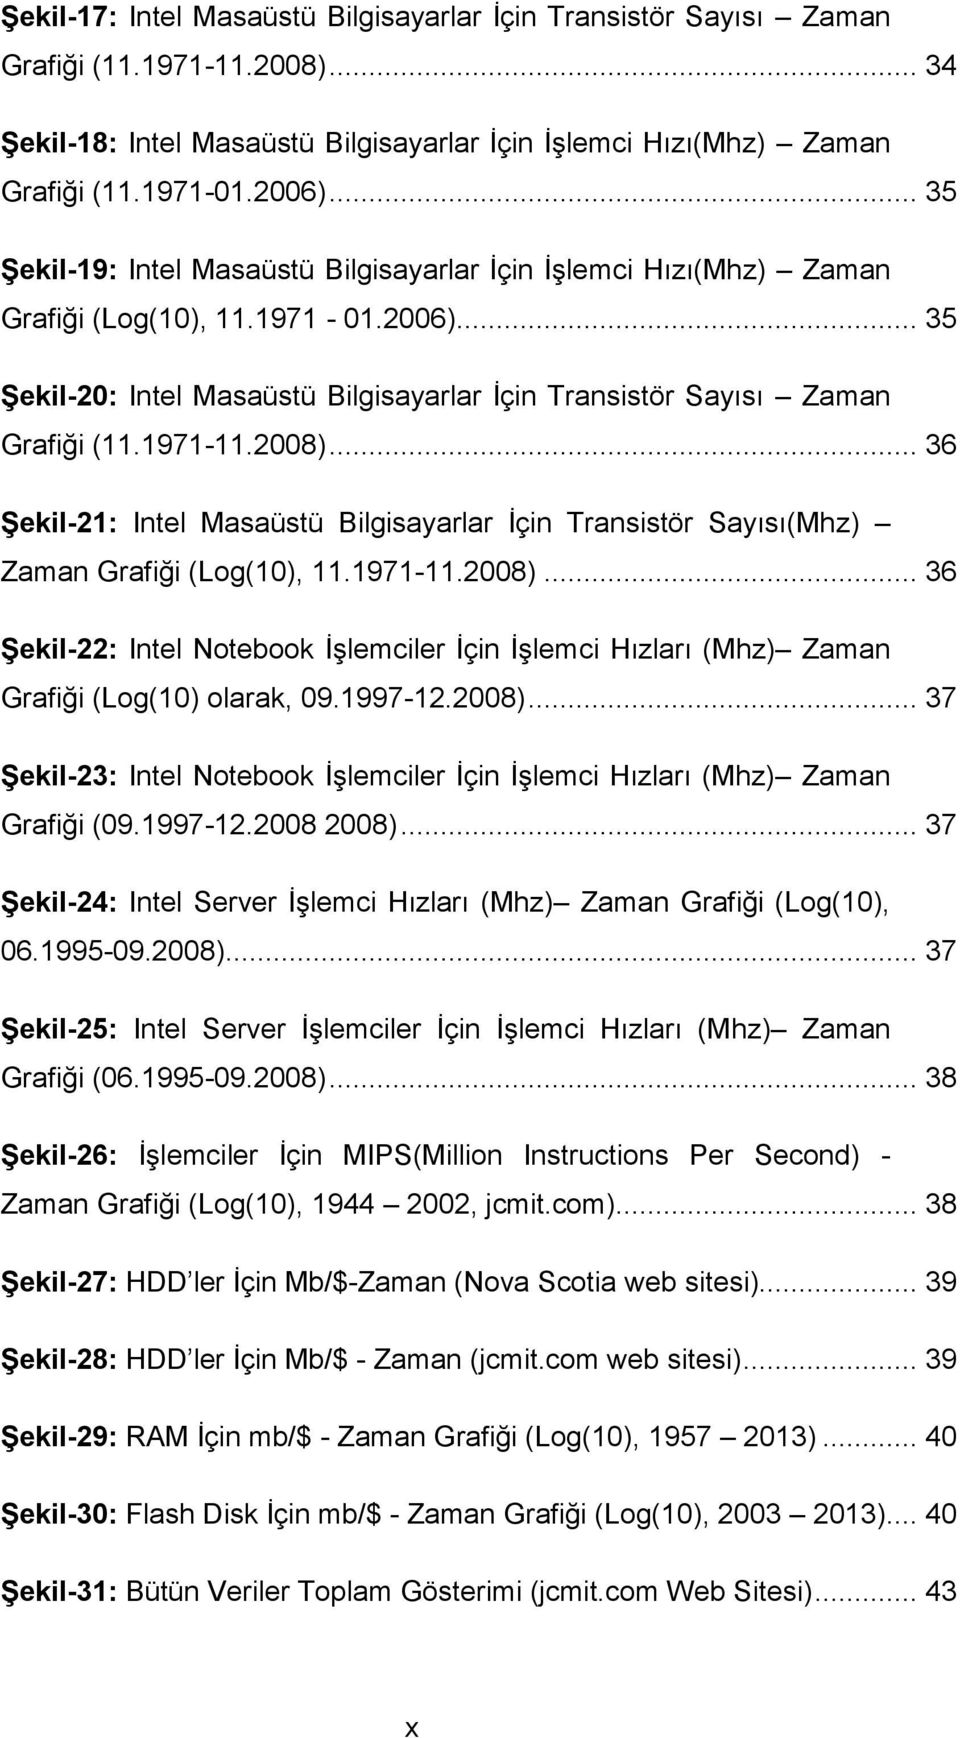 1971-11.2008)... 36 Şekil-21: Intel Masaüstü Bilgisayarlar İçin Transistör Sayısı(Mhz) Zaman Grafiği (Log(10), 11.1971-11.2008)... 36 Şekil-22: Intel Notebook İşlemciler İçin İşlemci Hızları (Mhz) Zaman Grafiği (Log(10) olarak, 09.